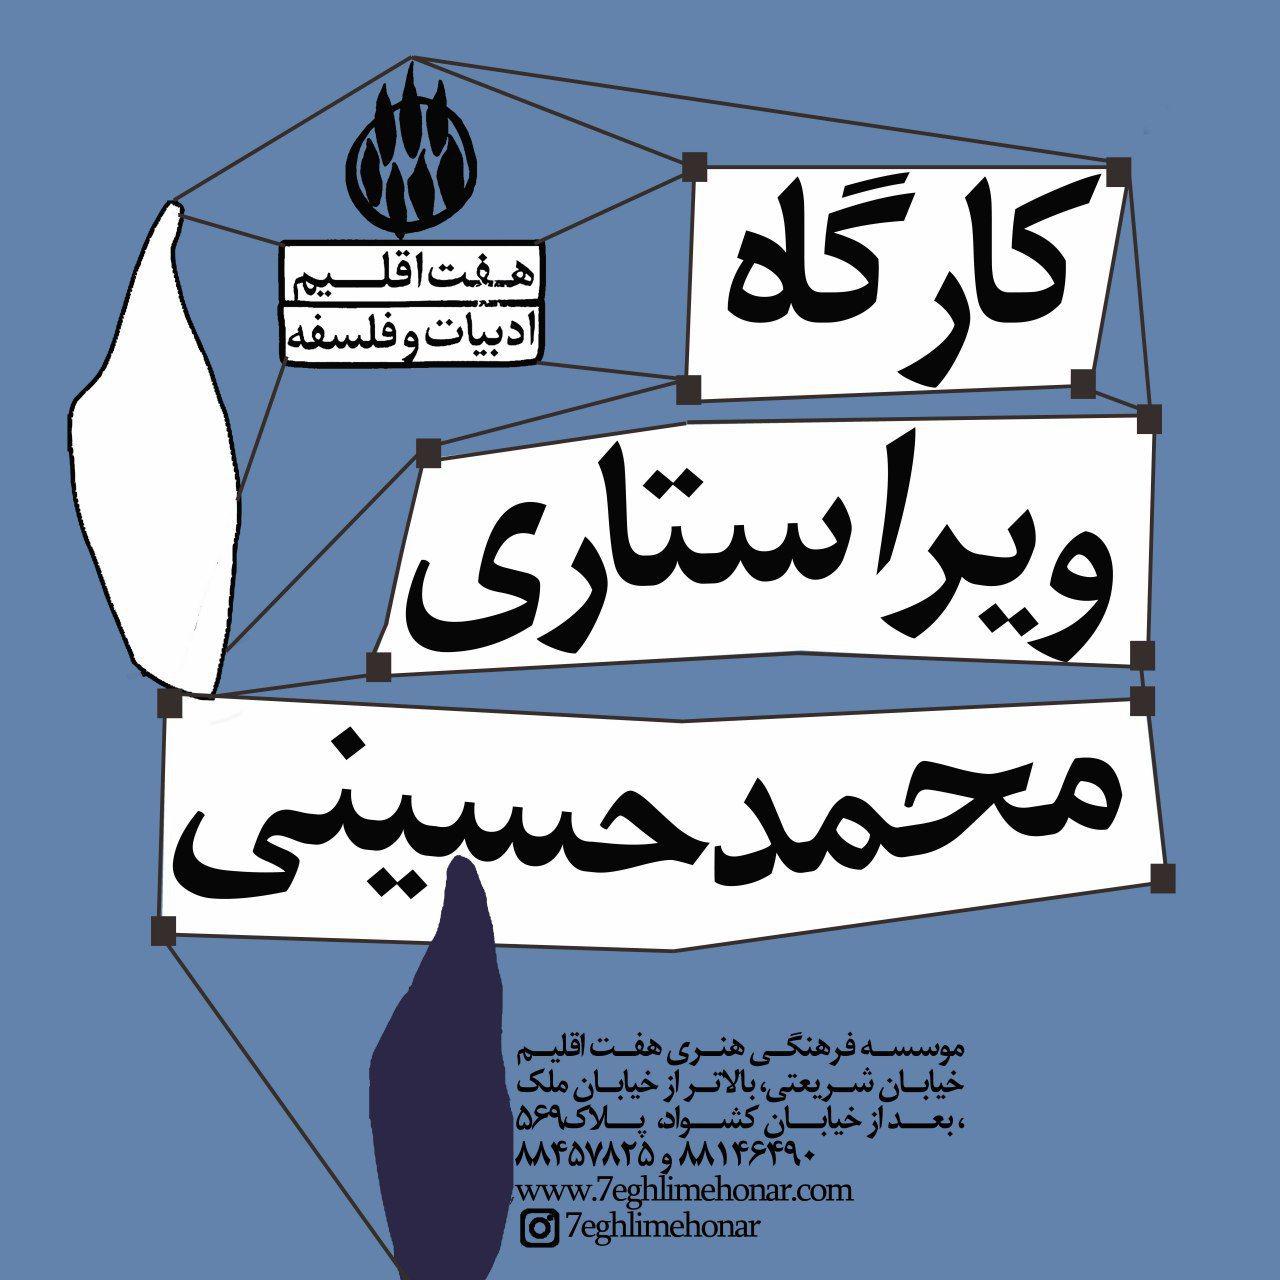 کارگاه  ویراستاری (ویرایش- زبان داستان) با تدریس محمد حسینی